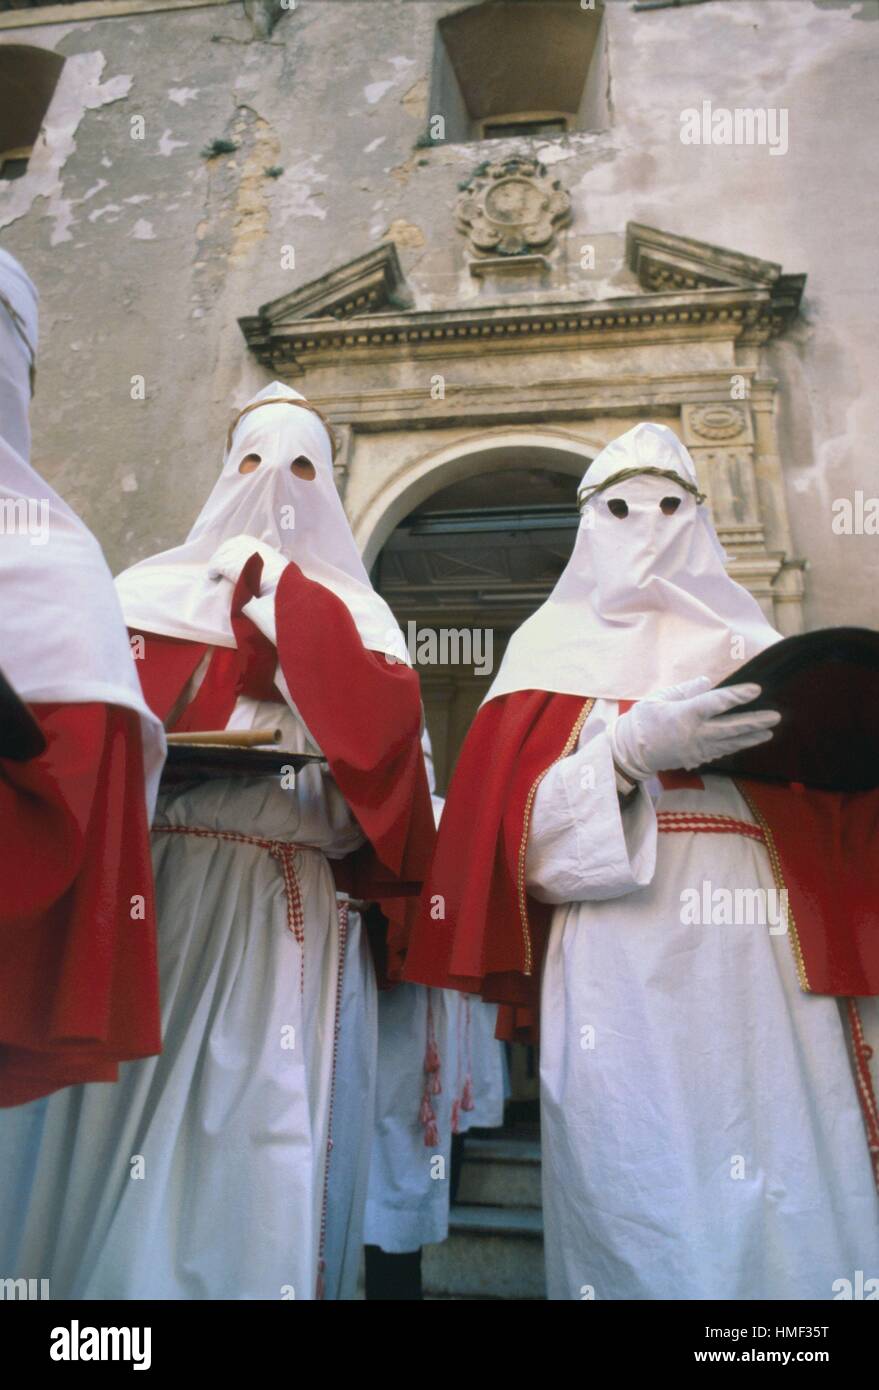 Sicilia (Italia); le celebrazioni tradizionali della Pasqua, processione del Venerdì Santo a Enna Foto Stock